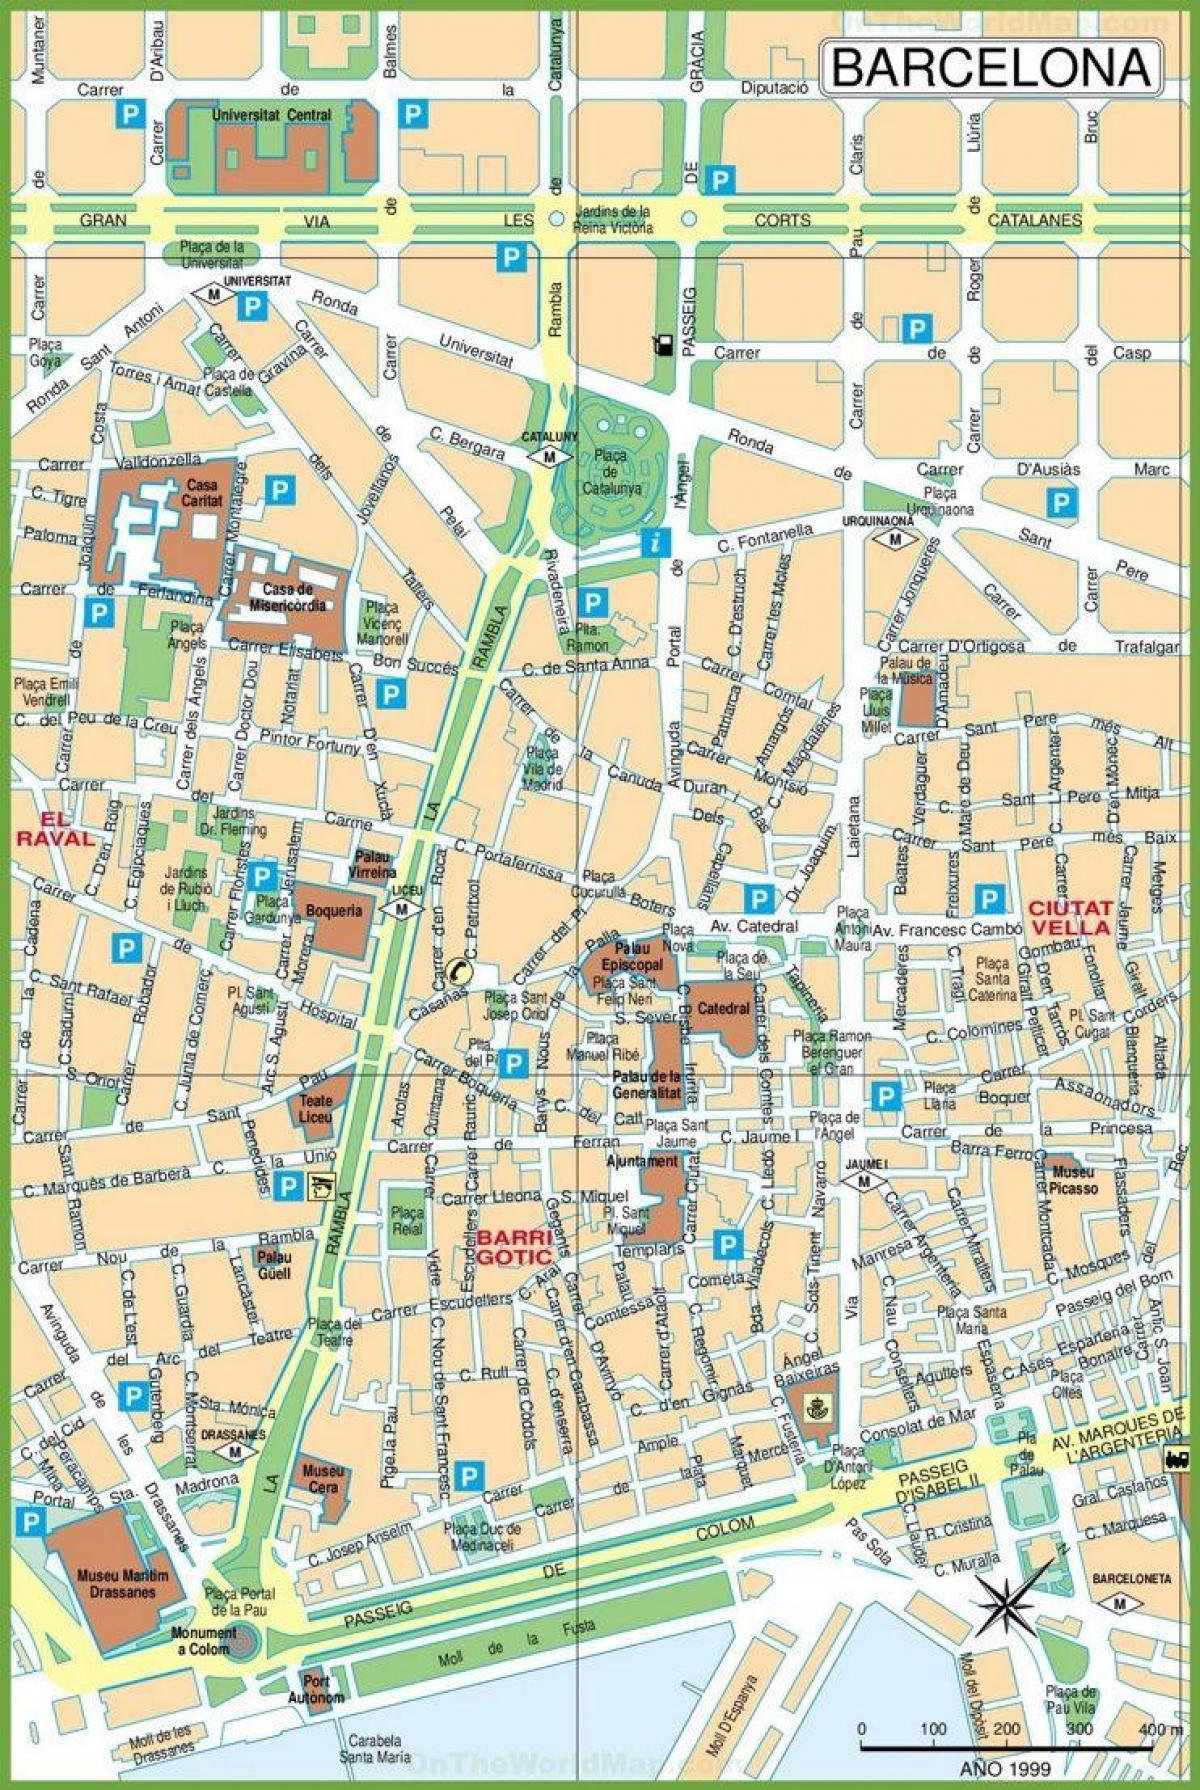 map of las ramblas barcelona spain